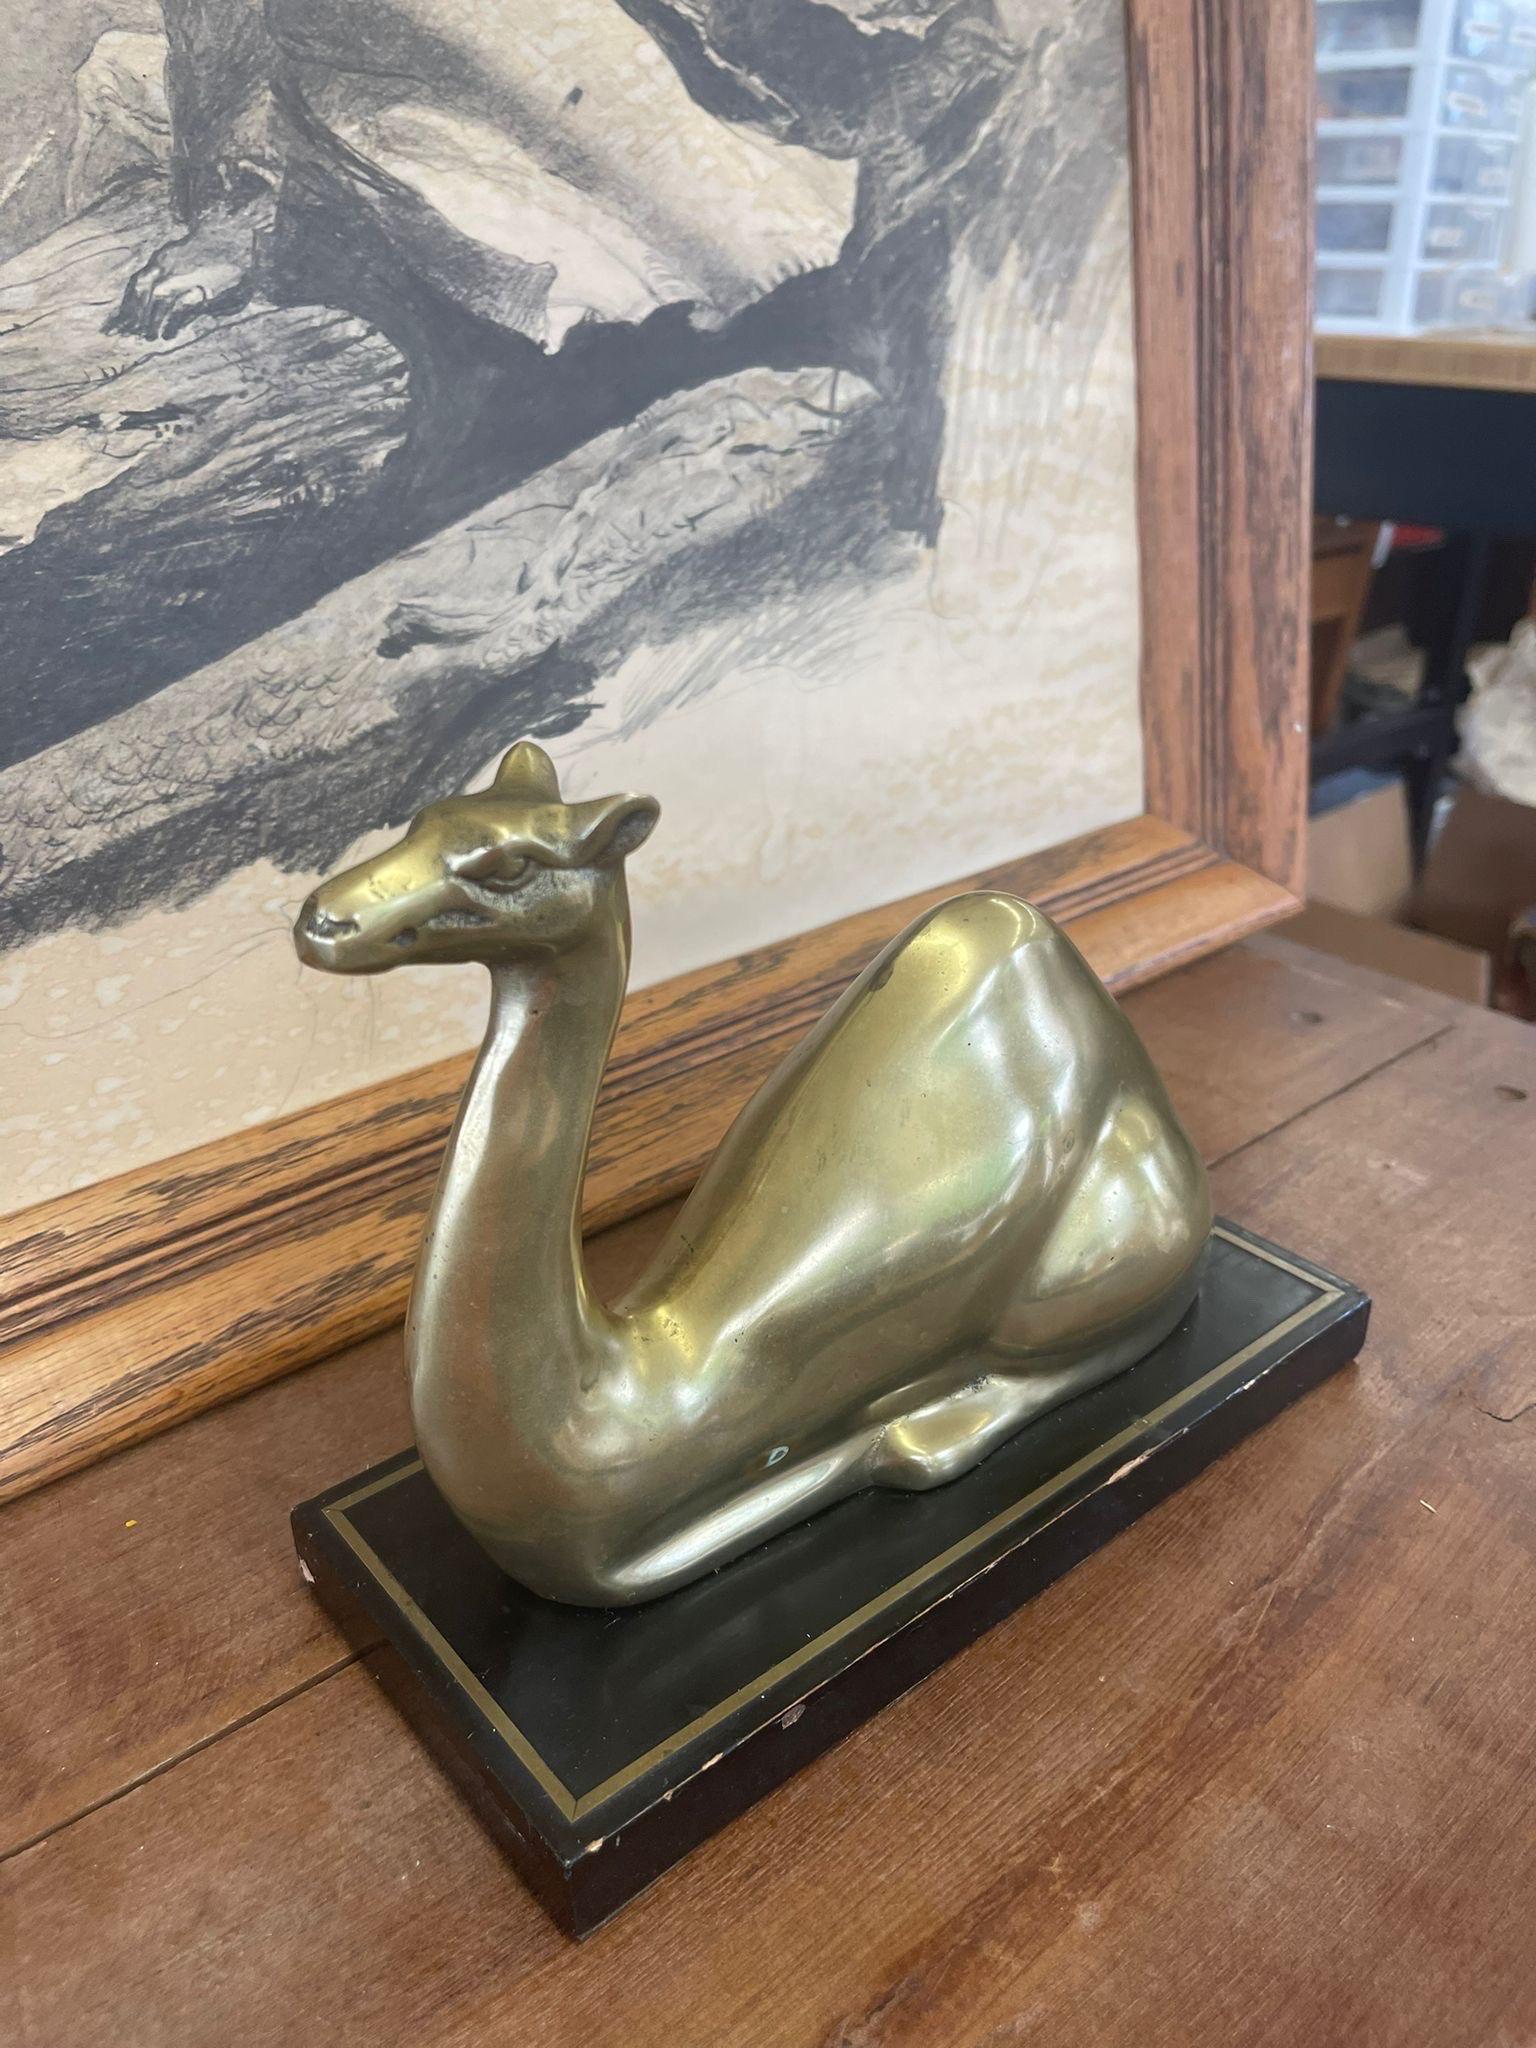 Figurine de chameau sur socle en bois. Probablement en laiton, avec une légère pétine sur un ton doré. Vintage Condition Consistent with Age.

Dimensions. 9 L ; 4 P ; 7 H